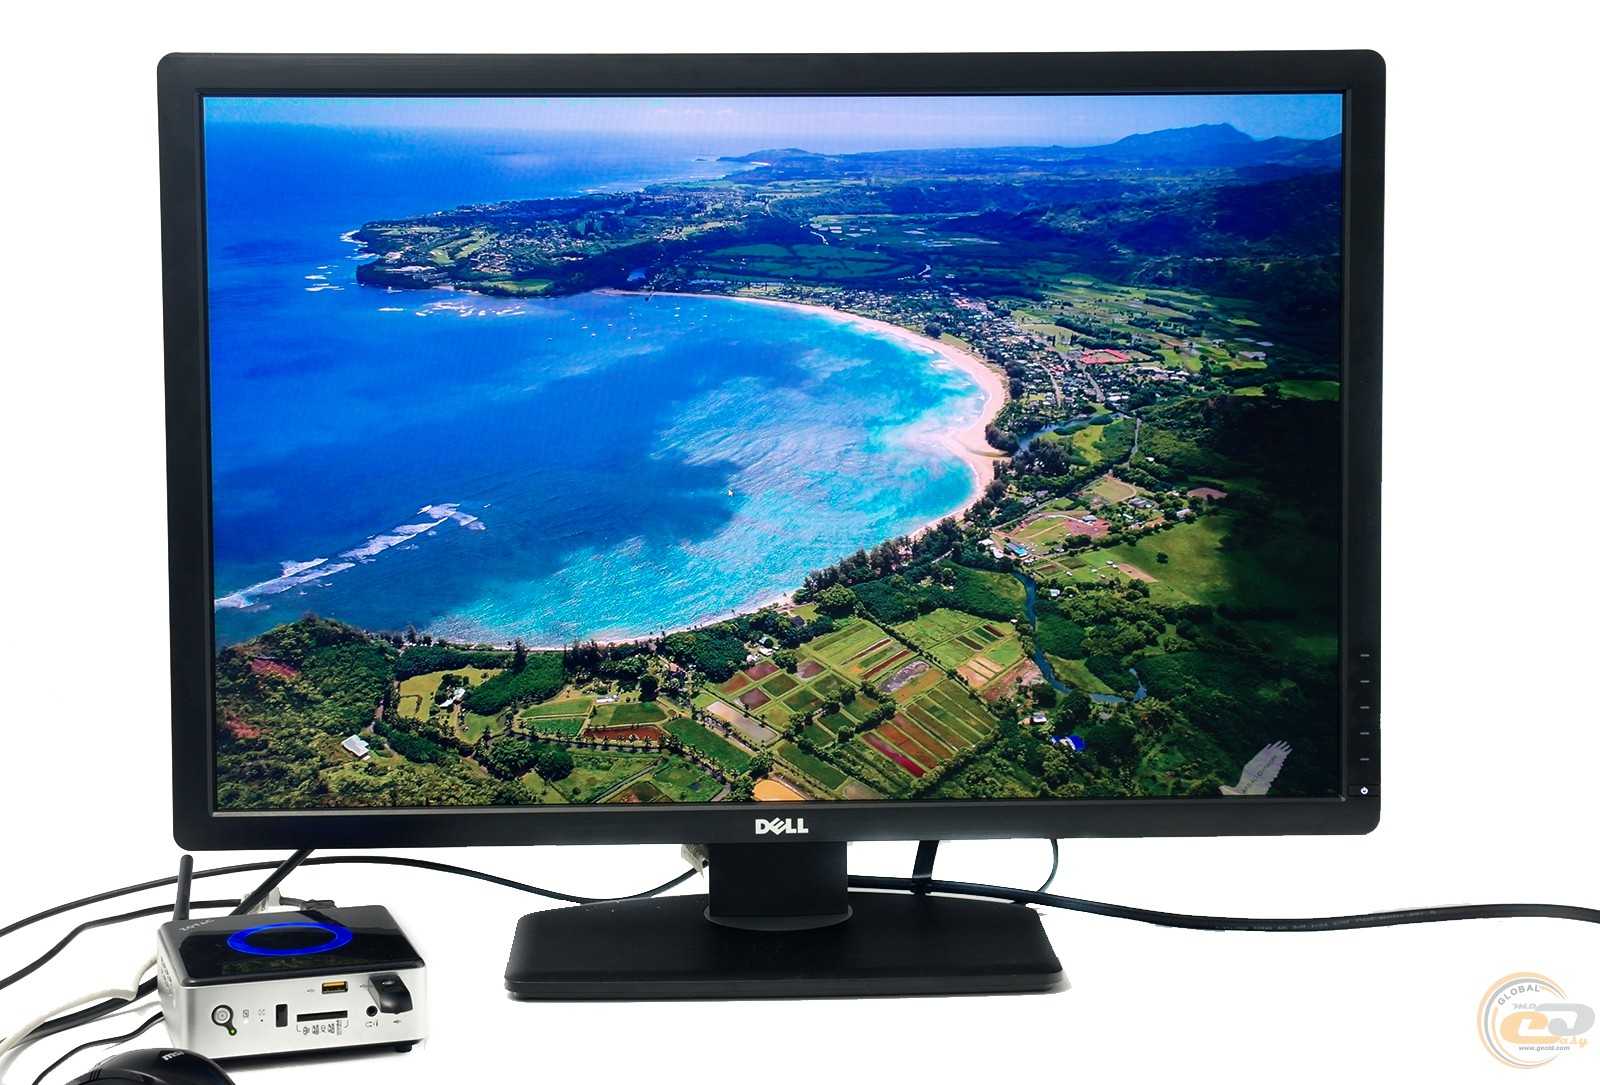 Монитор dell u3014 (3014-7735) (черный) купить от 93450 руб в красноярске, сравнить цены, отзывы, видео обзоры и характеристики